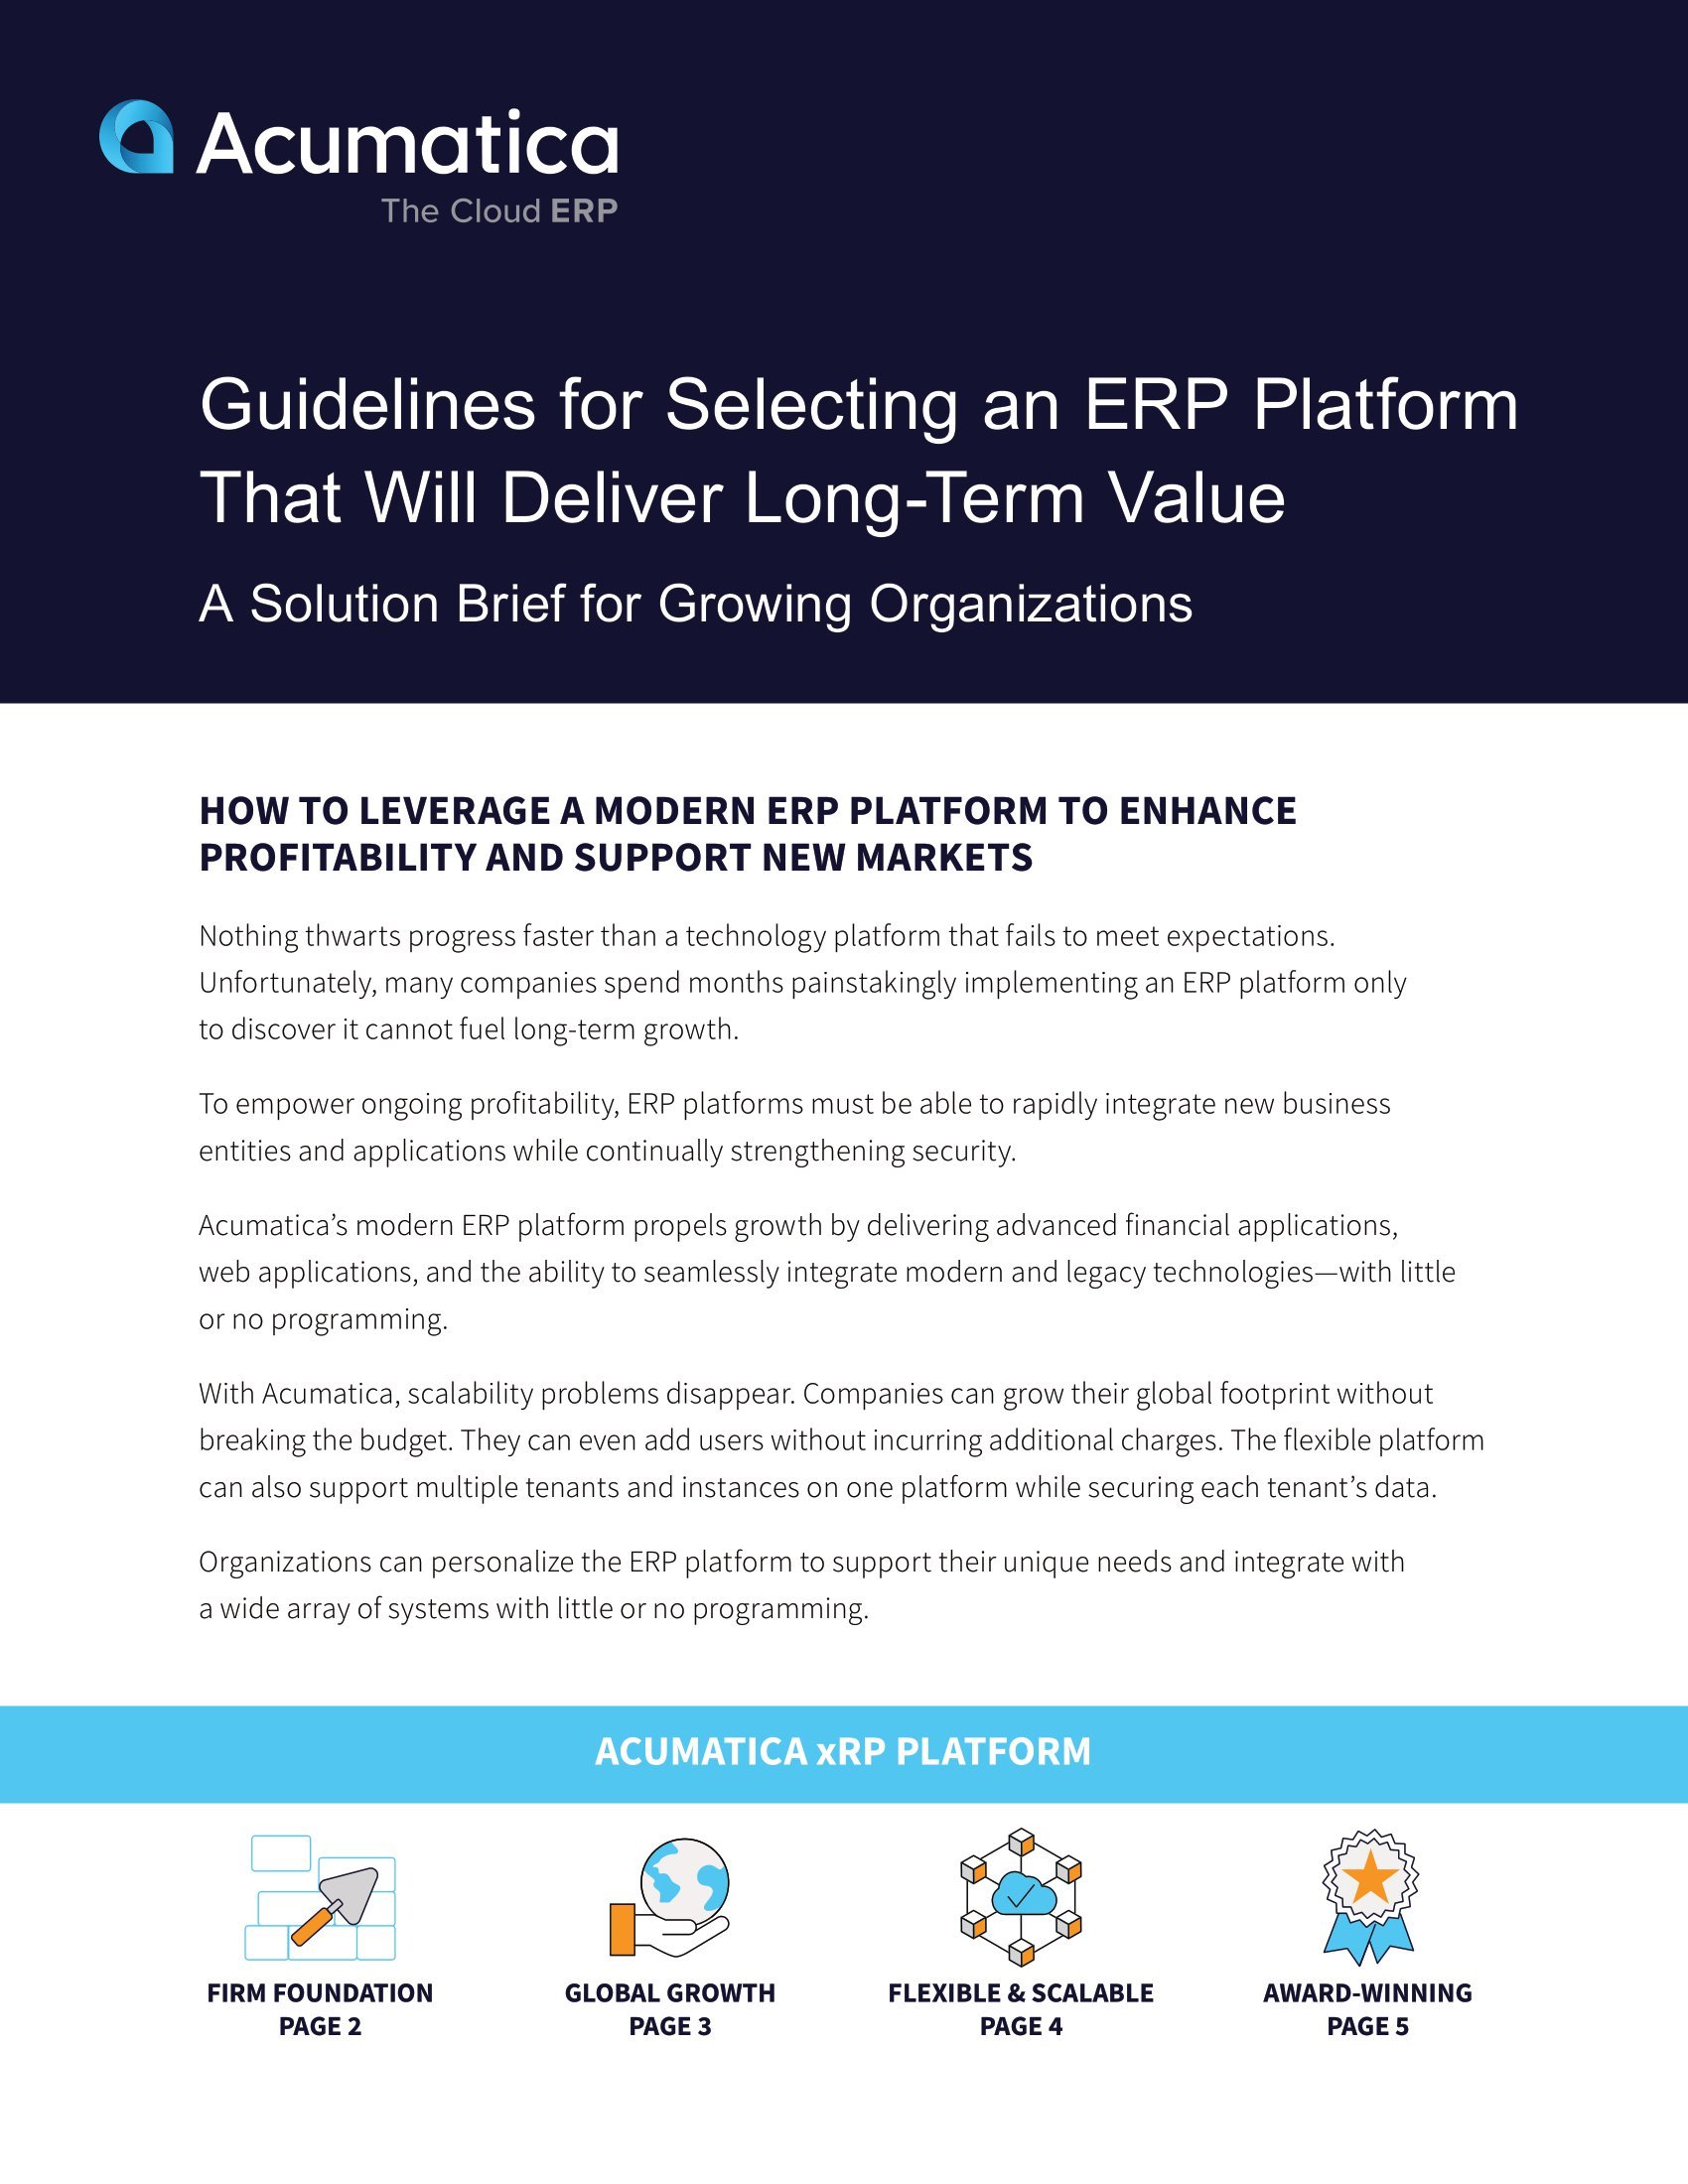 Aproveche una plataforma ERP moderna para el crecimiento y la rentabilidad futuros